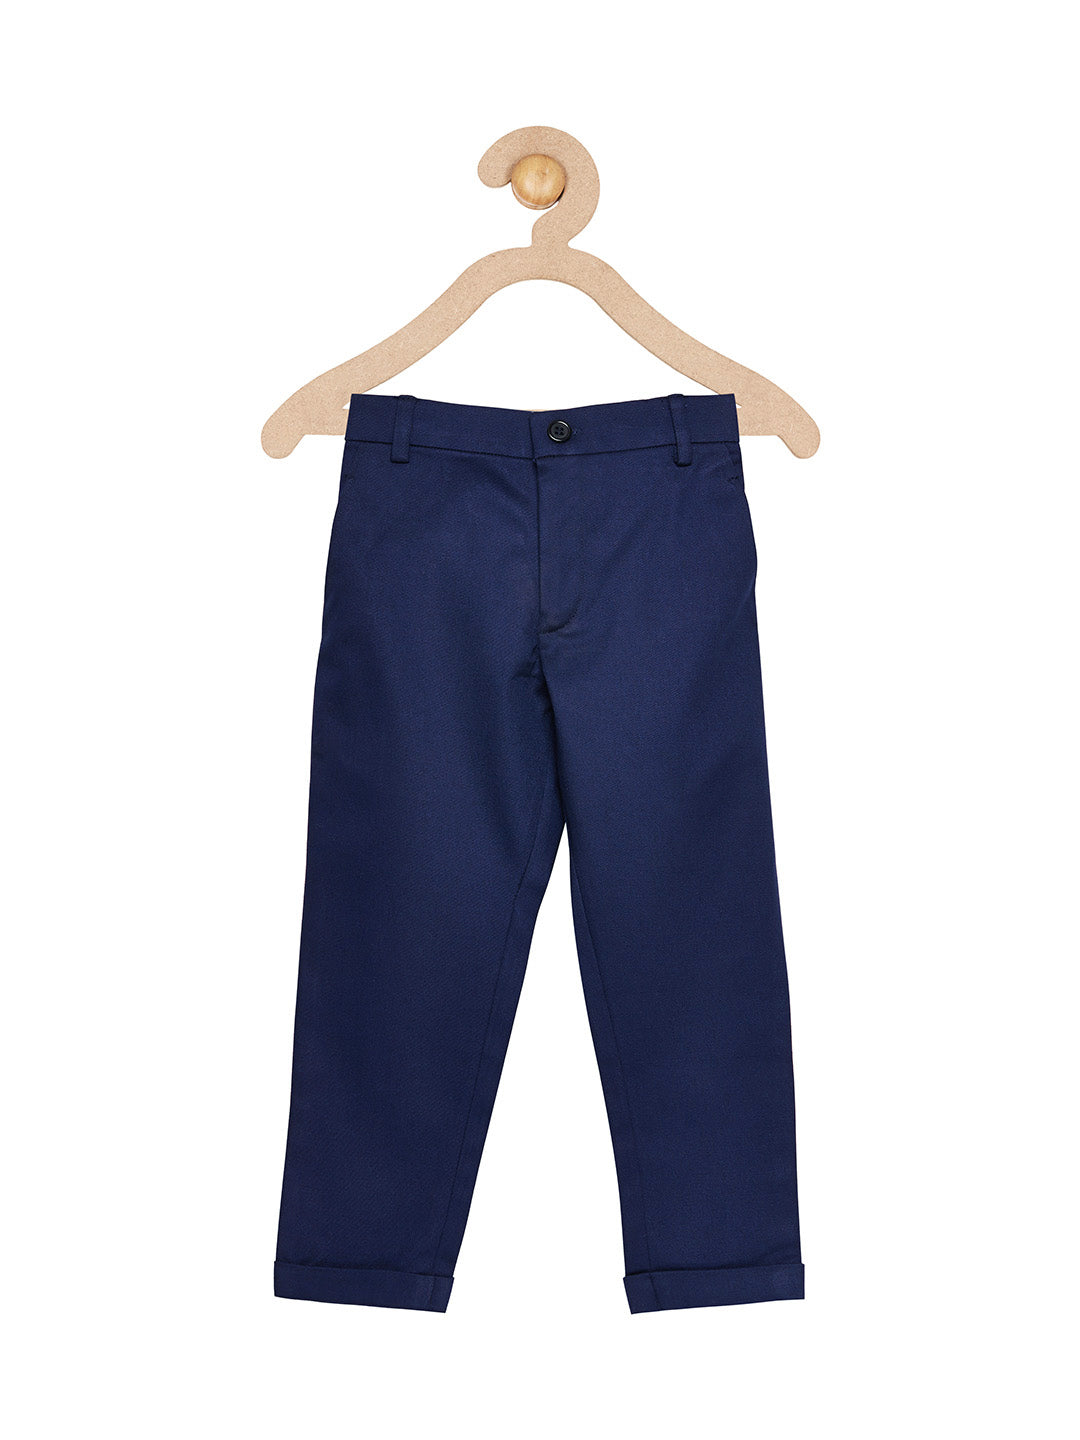 Boys Navy Blue Trouser